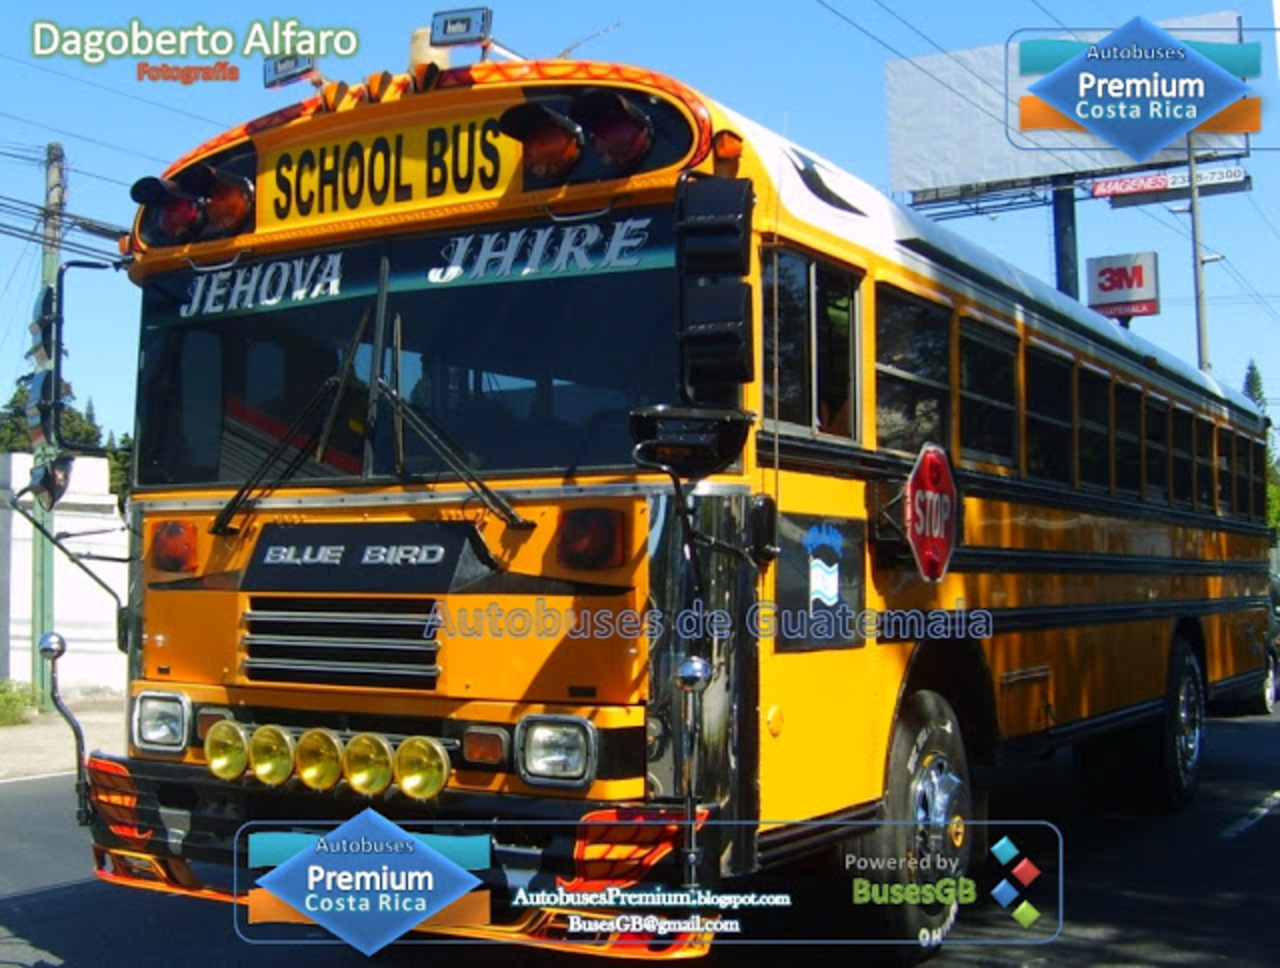 Autobuses Premium Costa Rica: enero 2012